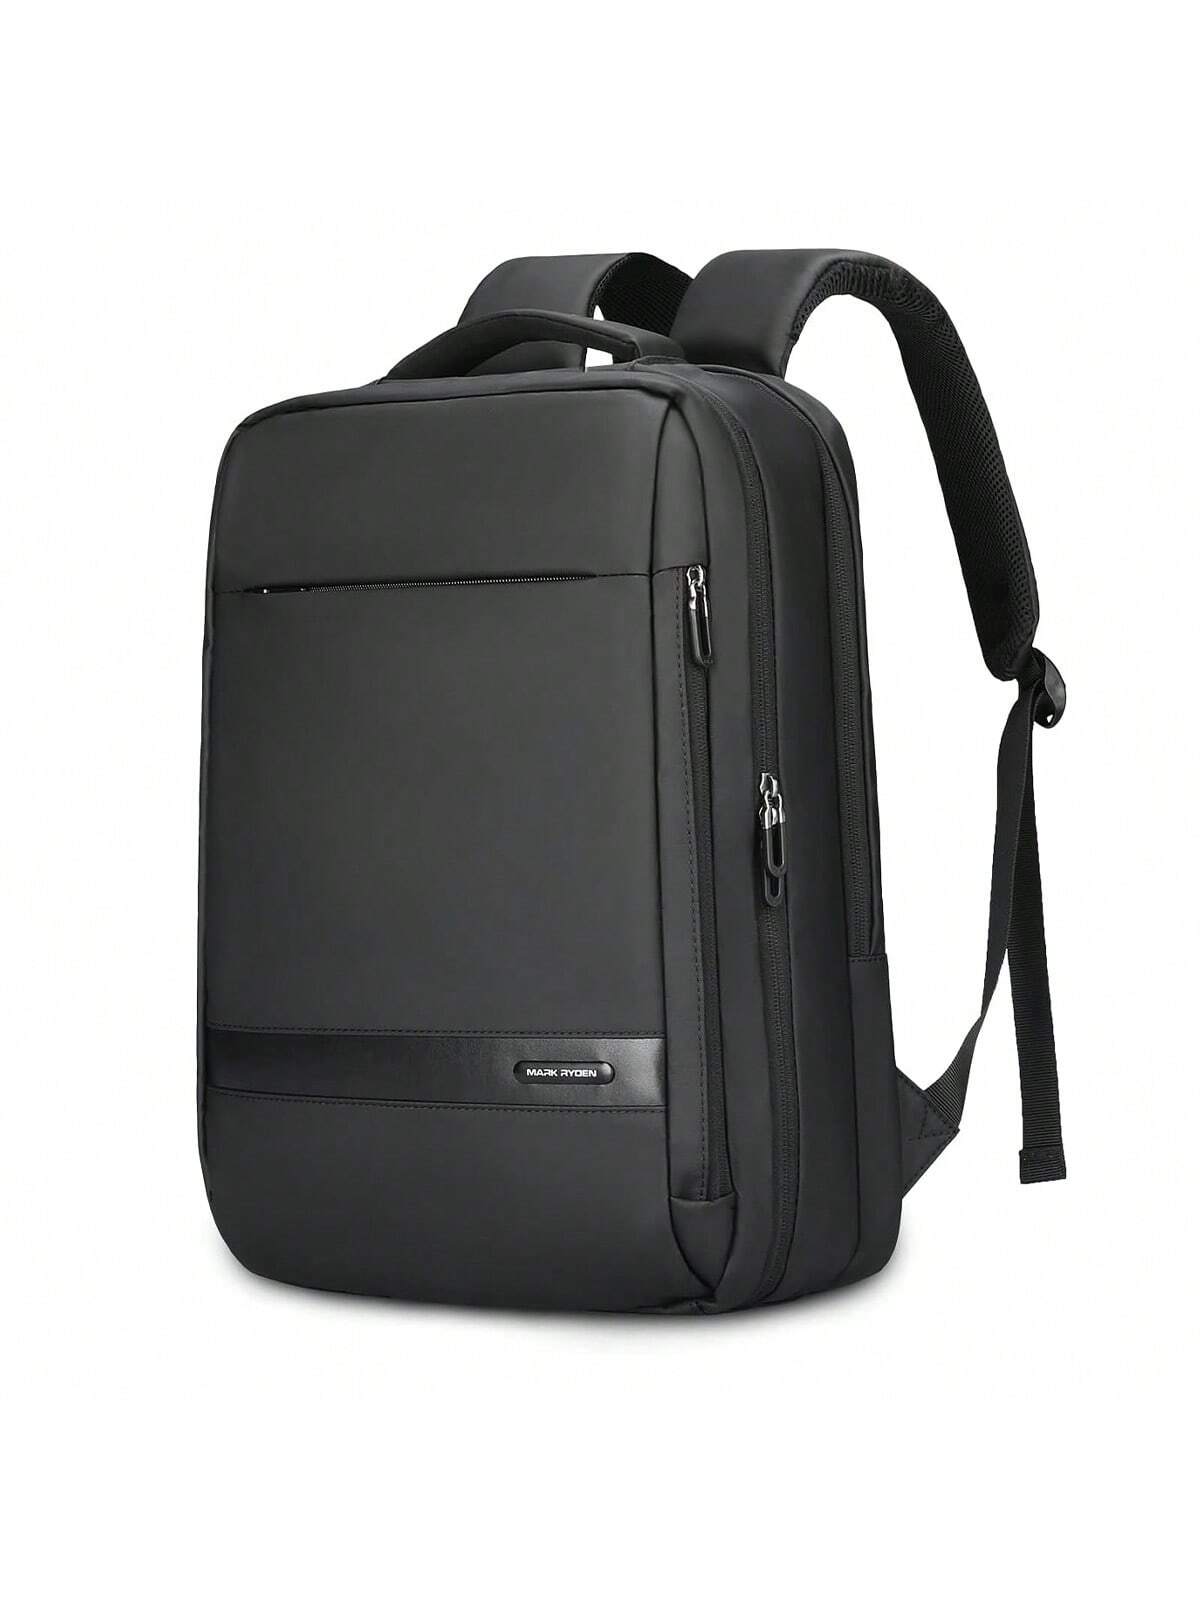 MARK RYDEN Anti-Thief USB рюкзак мужской 15, черный рюкзак со светоотражающей полосой нейлоновая школьная сумка для колледжа подростков спортивный дорожный рюкзак студенческий рюкзак